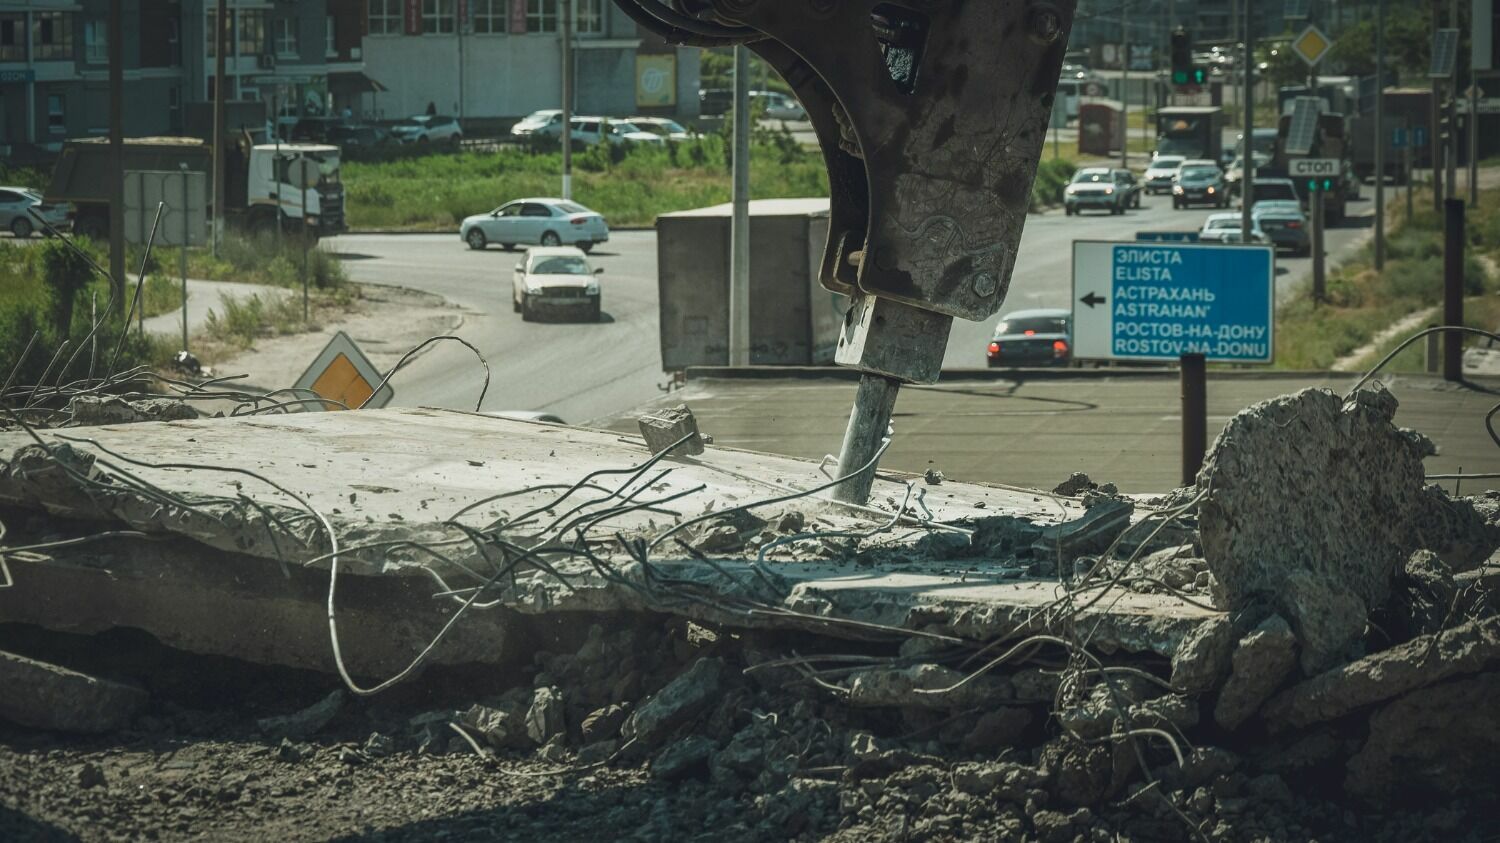 Реконструкция участка Третьей Продольной магистрали в Волгограде